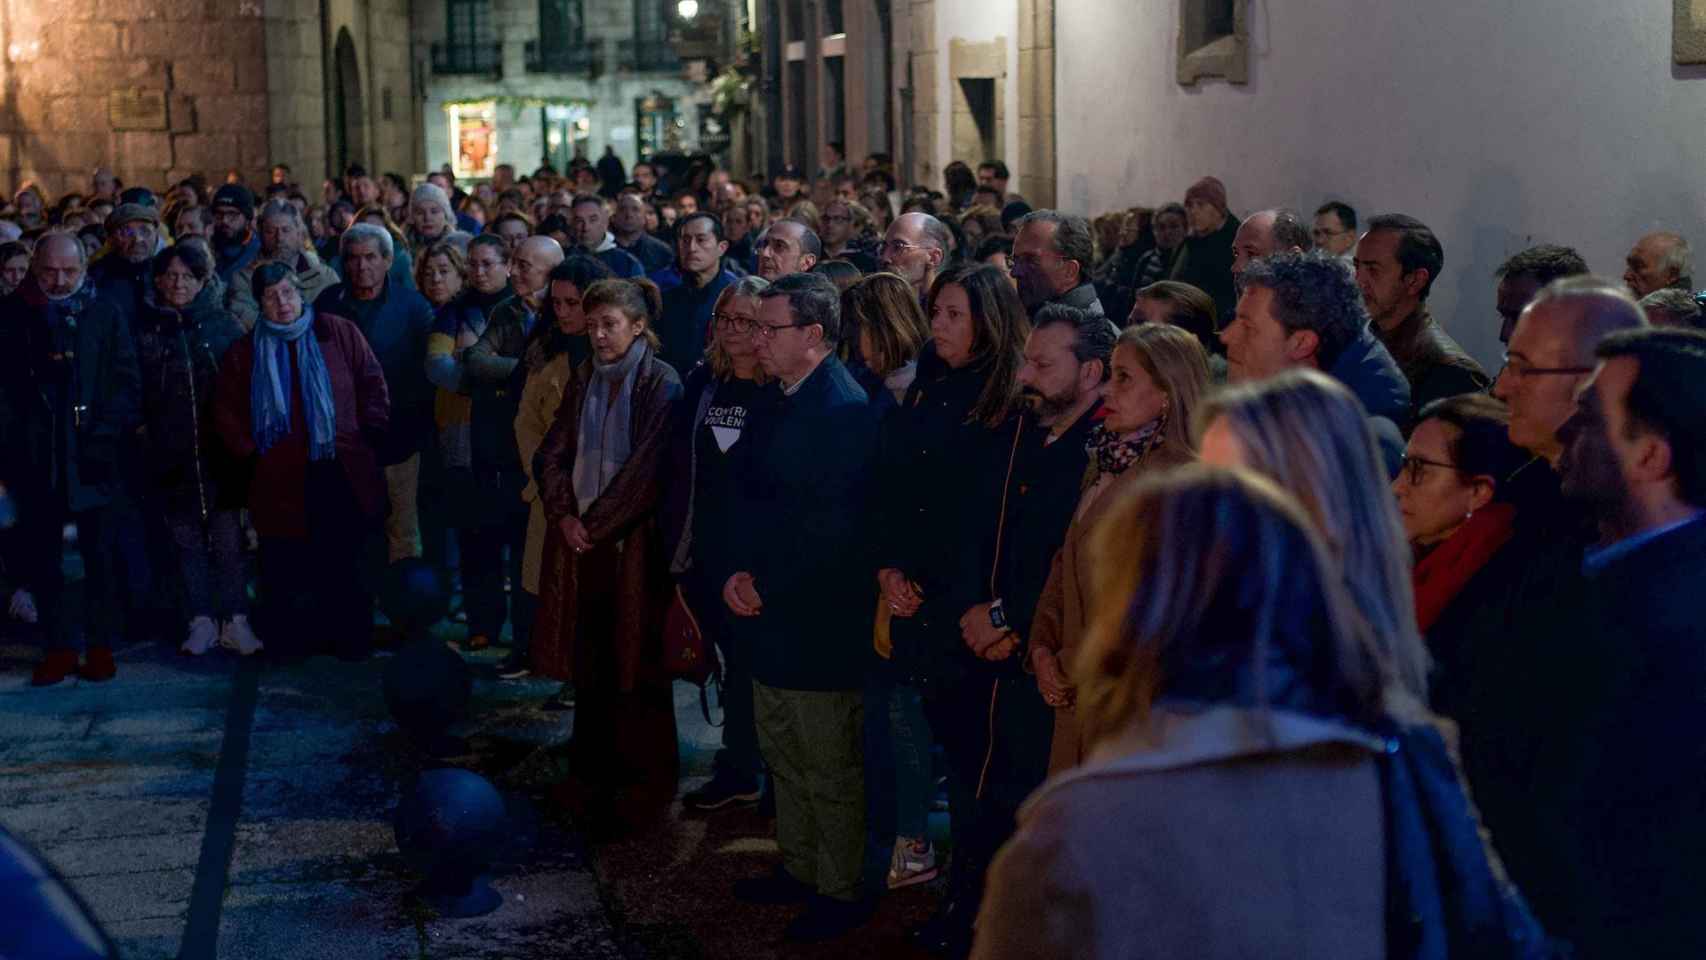 Vecinos de Baiona y representantes políticos guardan un minuto de silencio tras el asesinato machista ocurrido en la localidad.